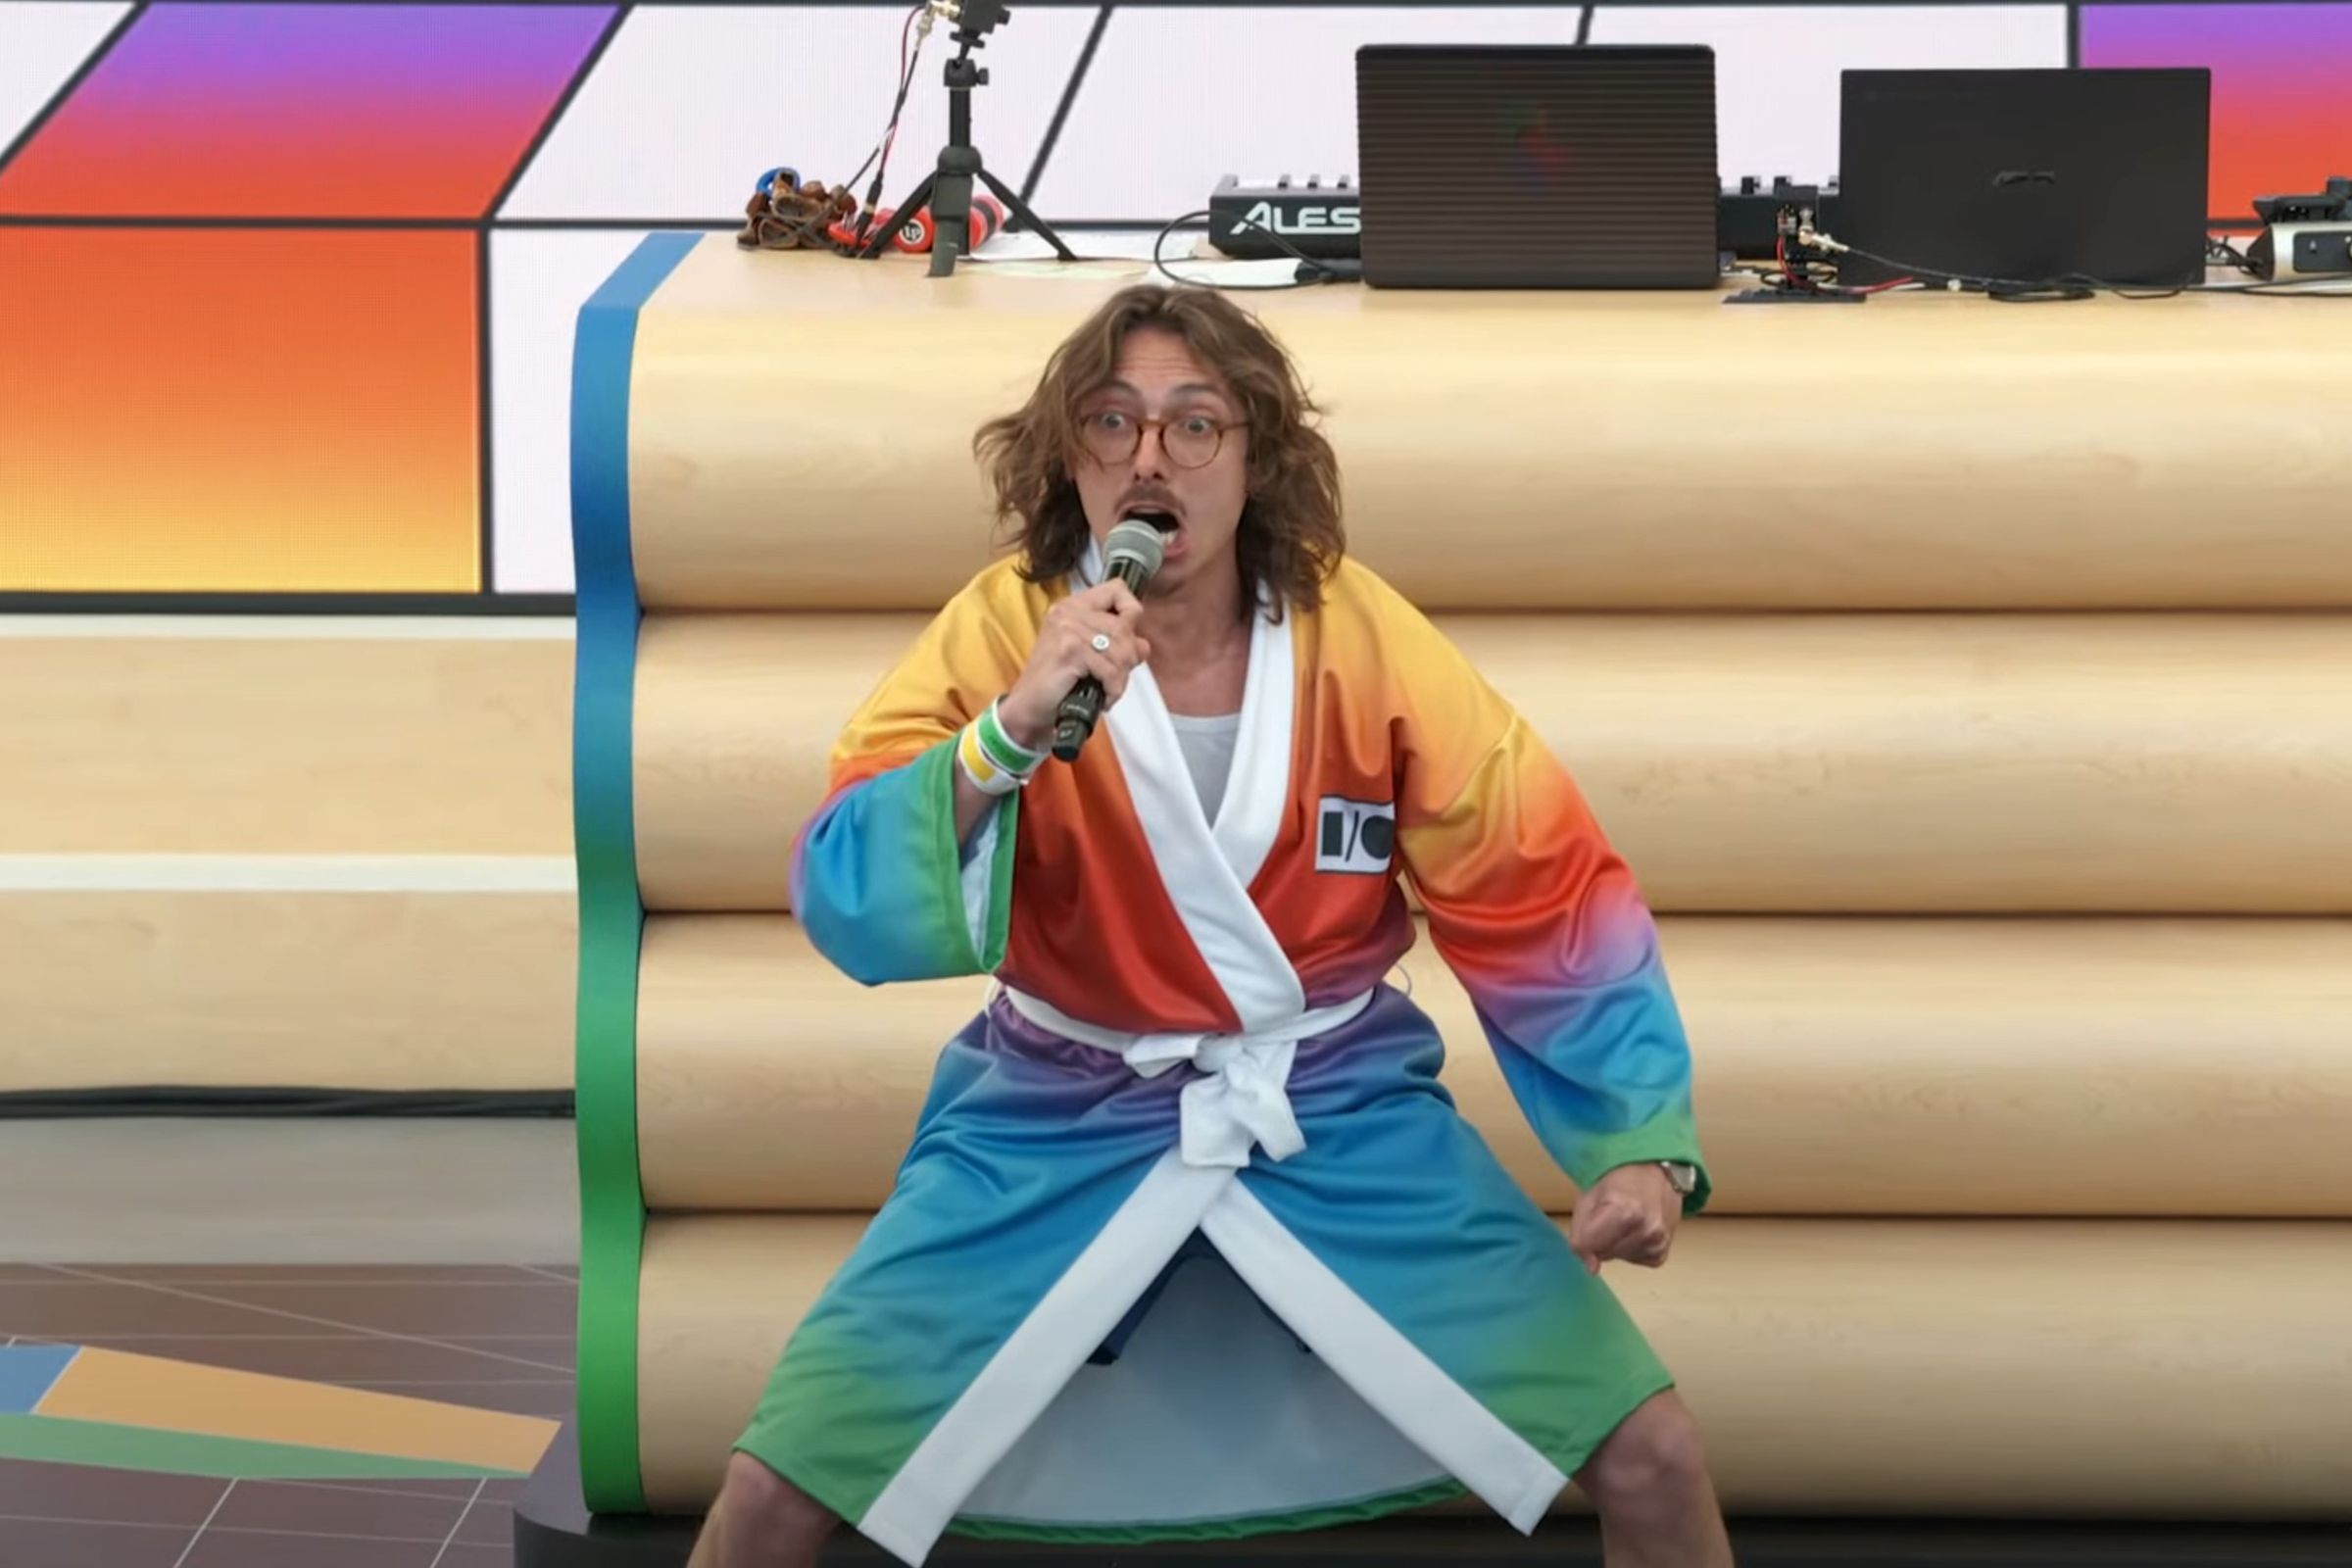 Marc Rebillet membuka acara Google I/O dengan jubah warna-warni.